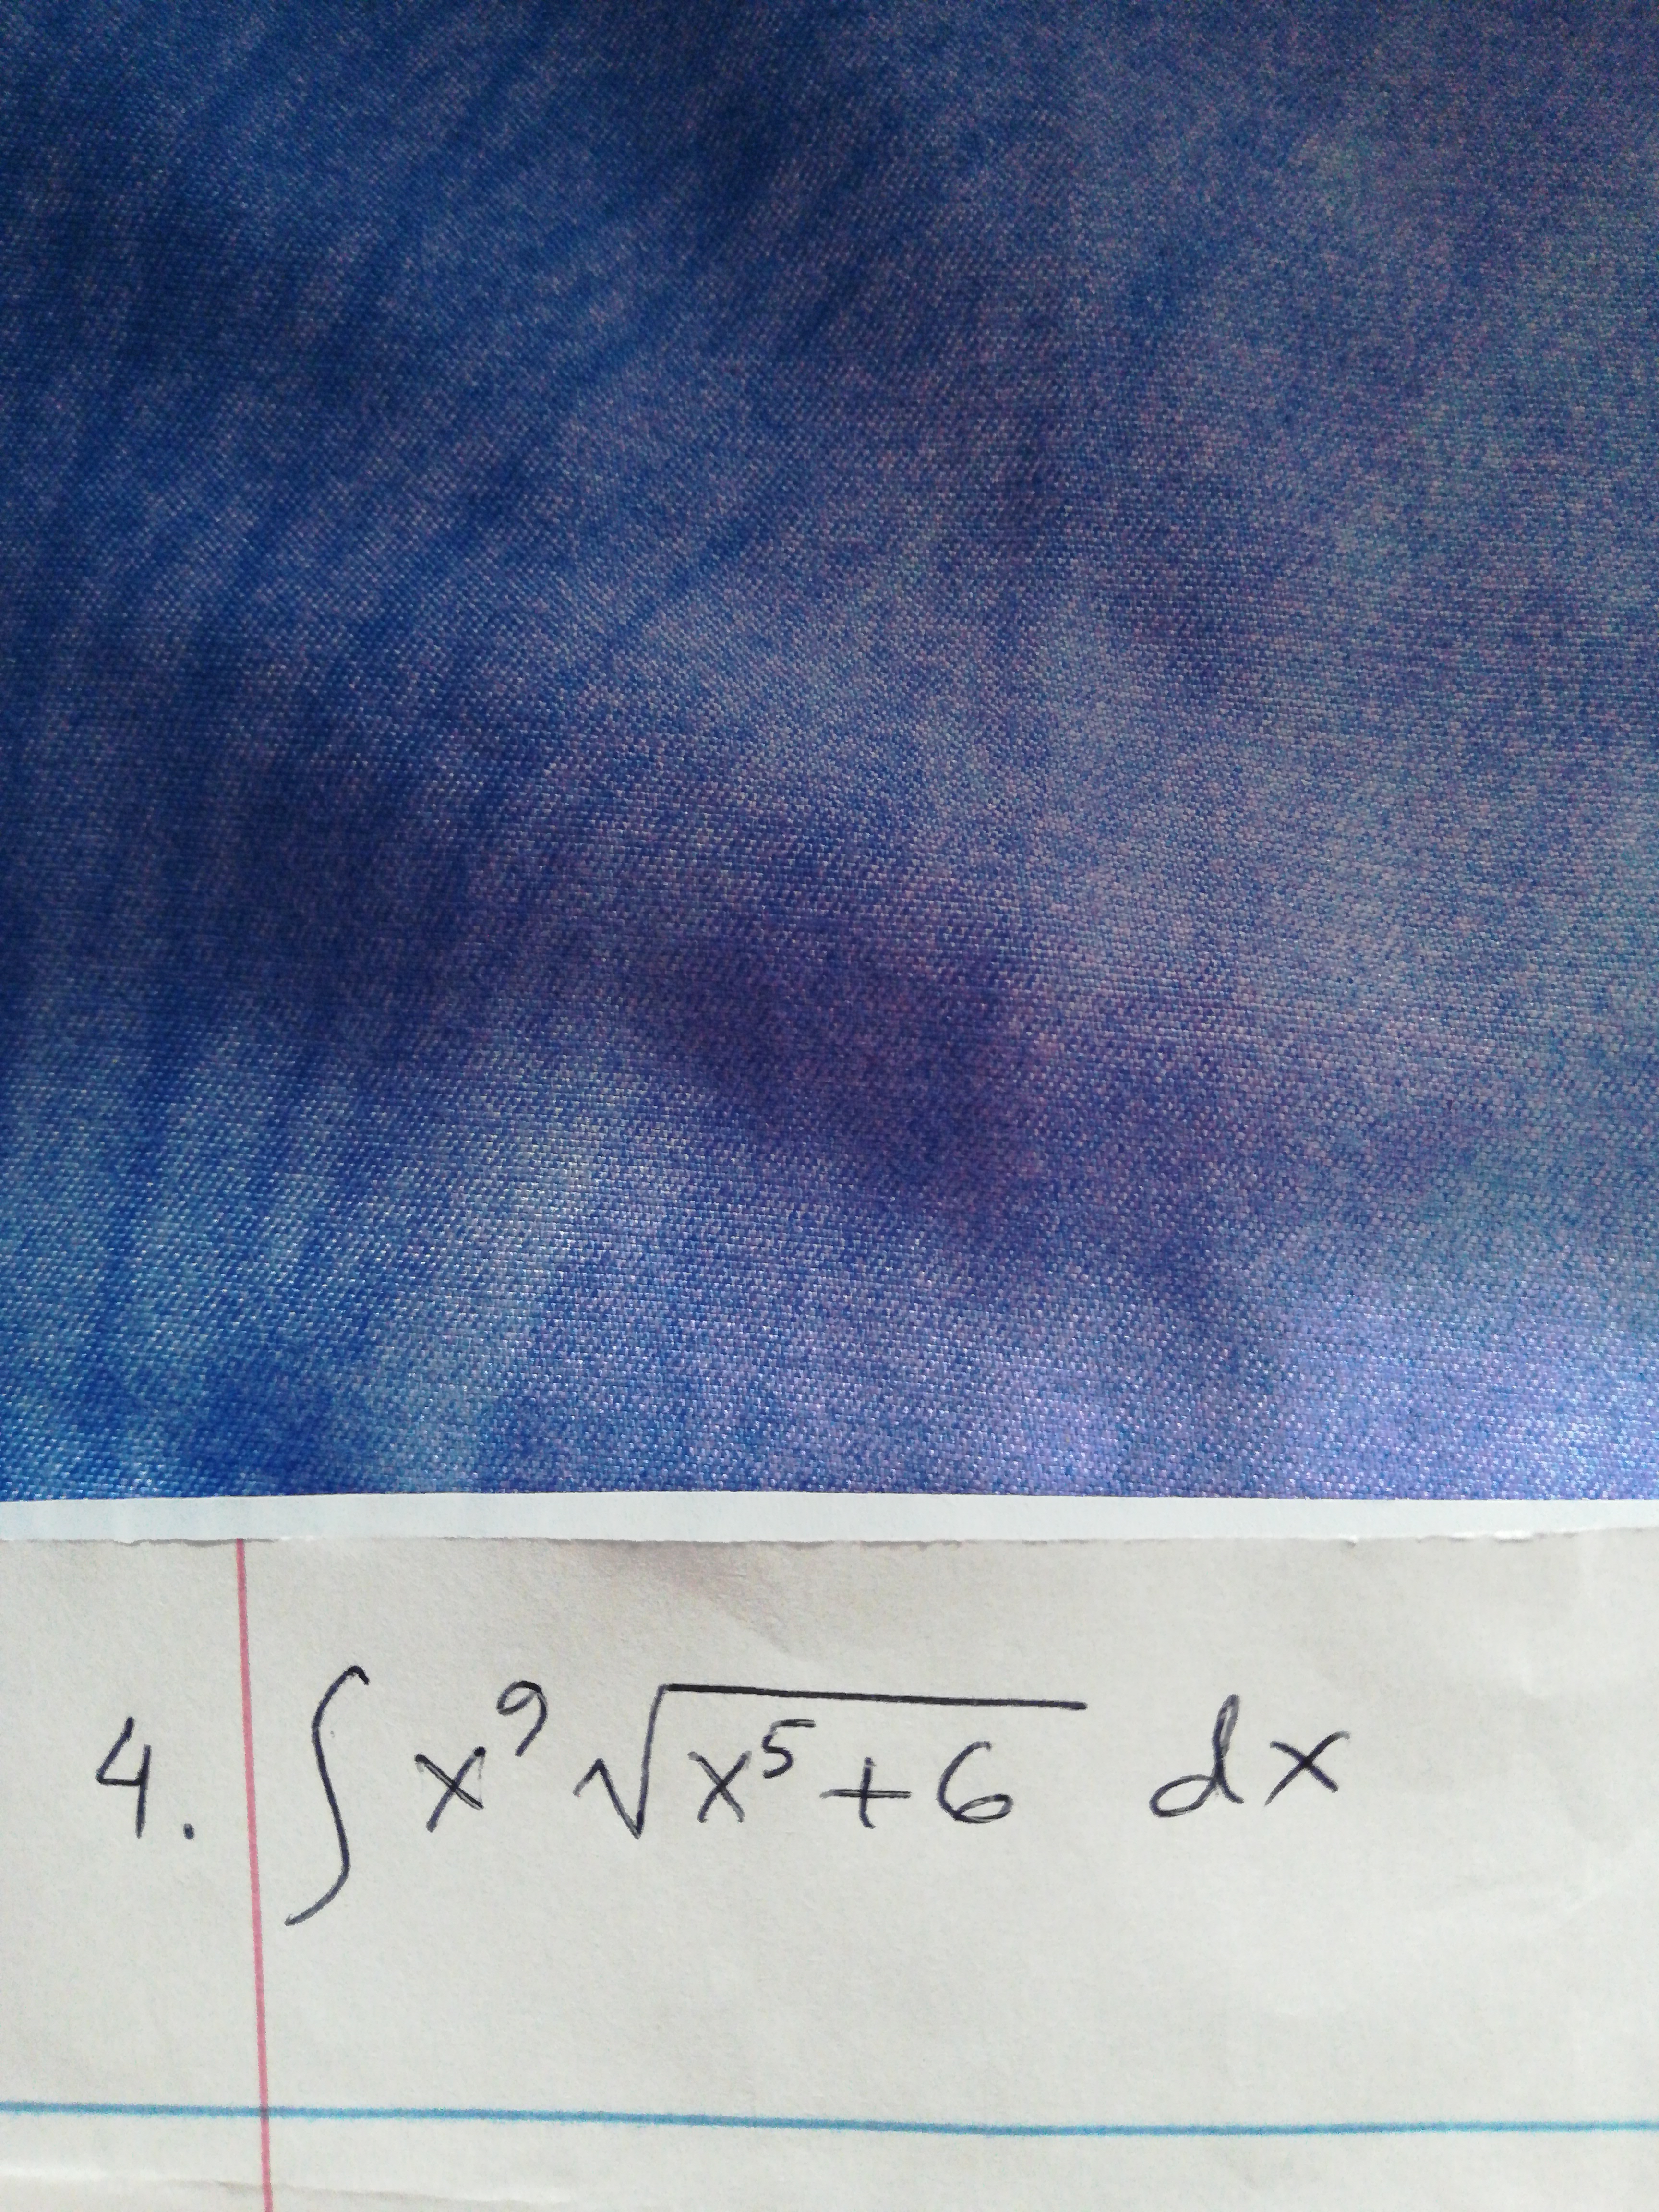 xx5+G dx
4.
